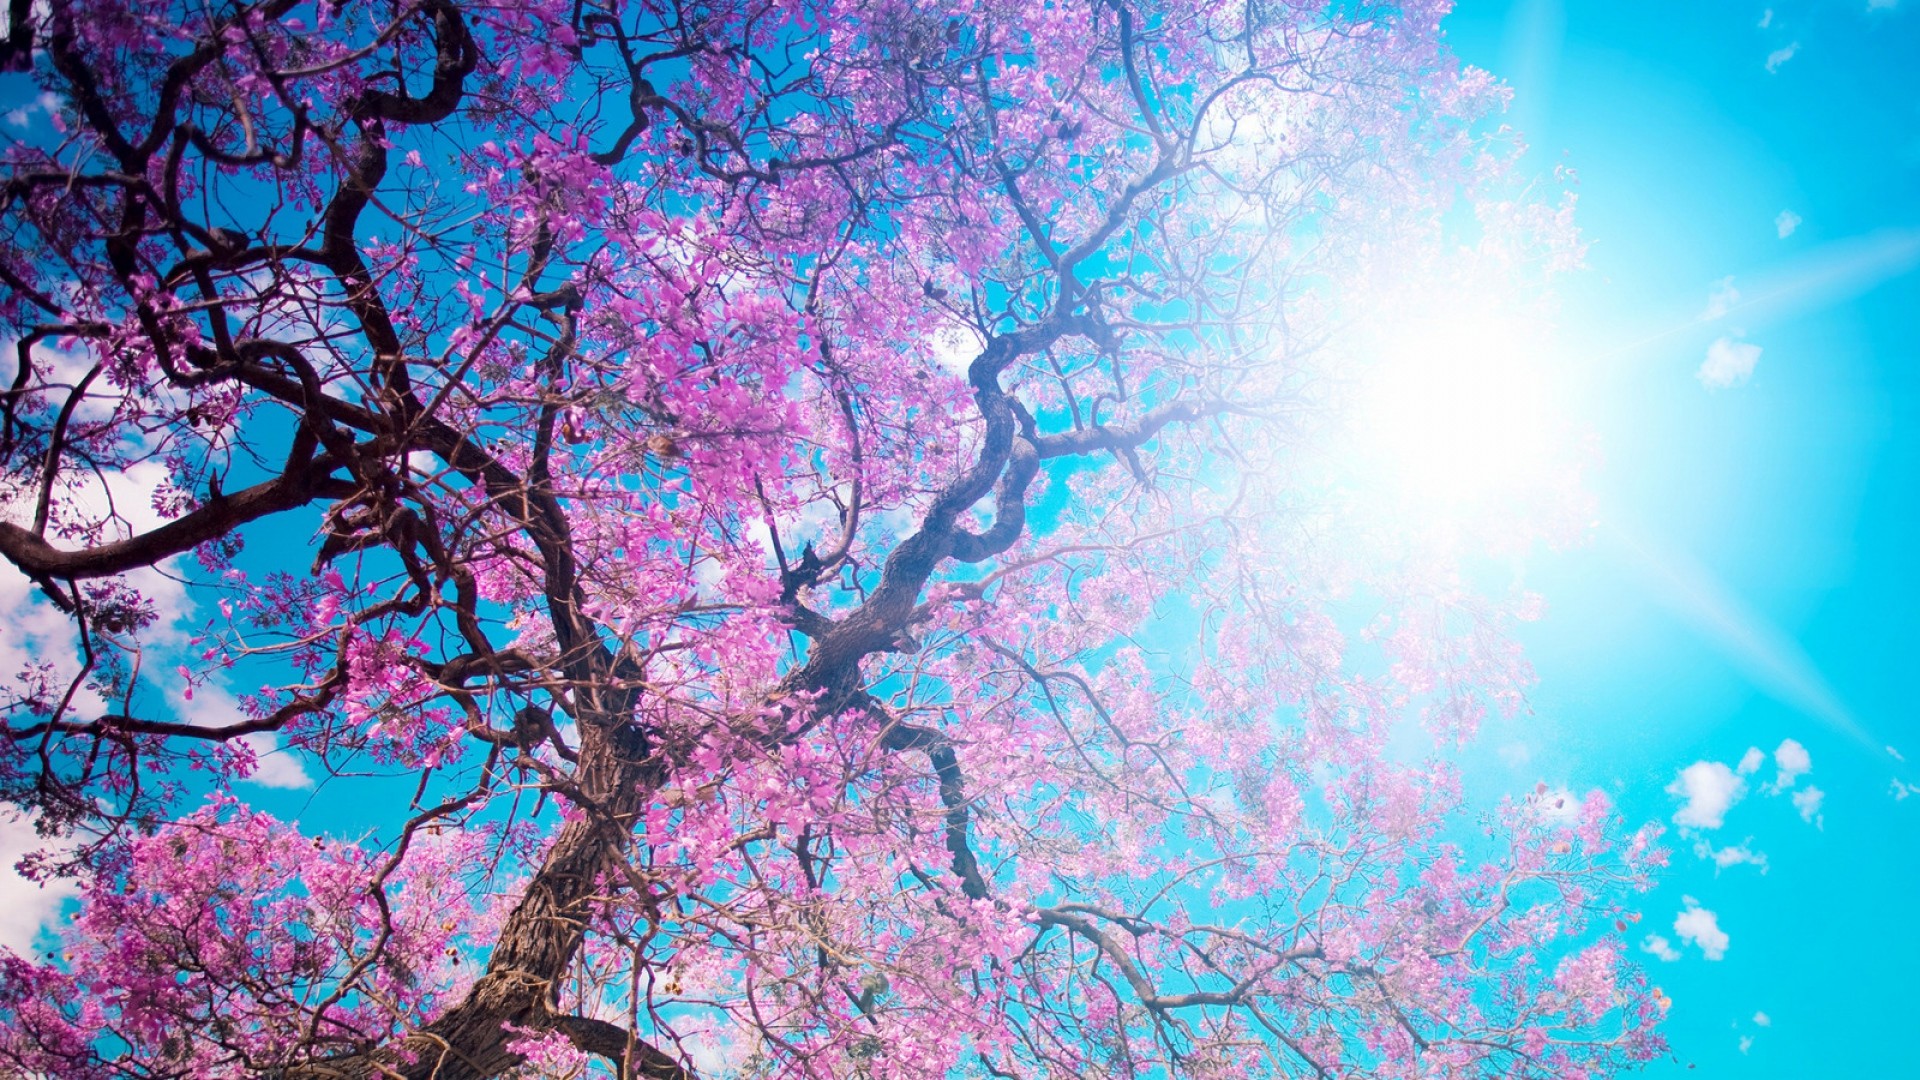 1920x1080 o-hanami, blossom festival and to enjoy the cherry blossoms, japan